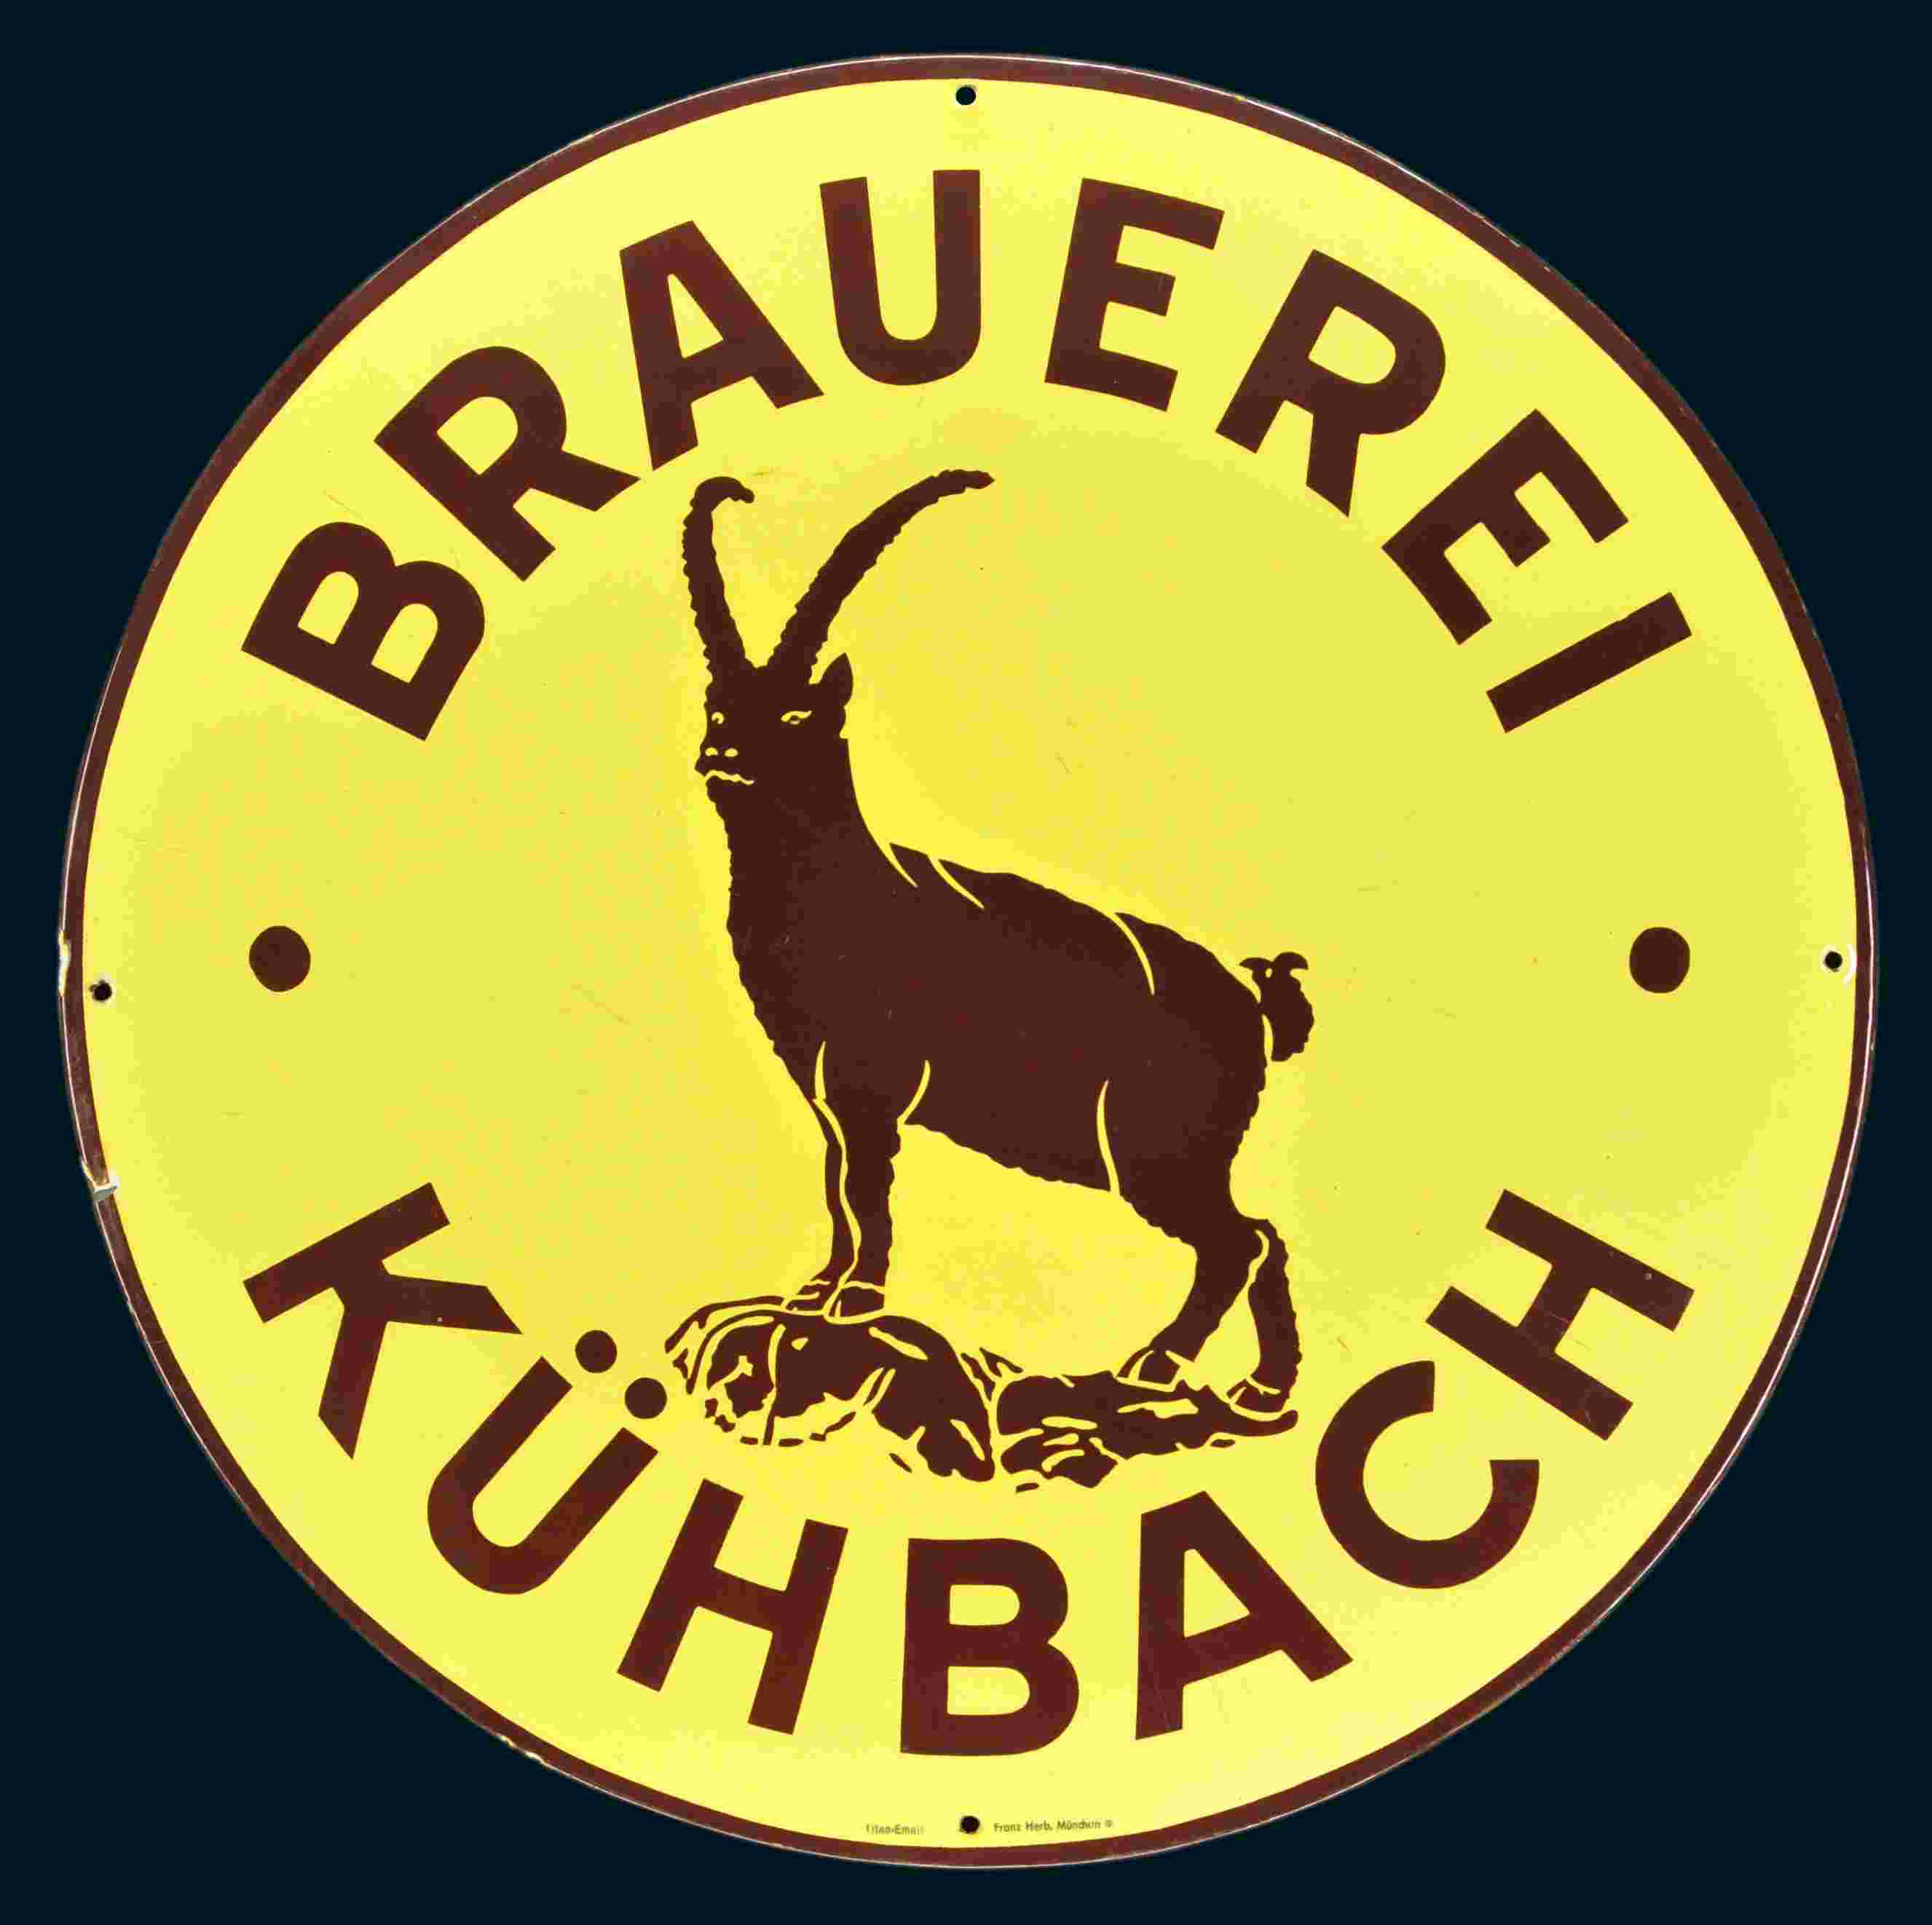 Brauerei Kühbach 